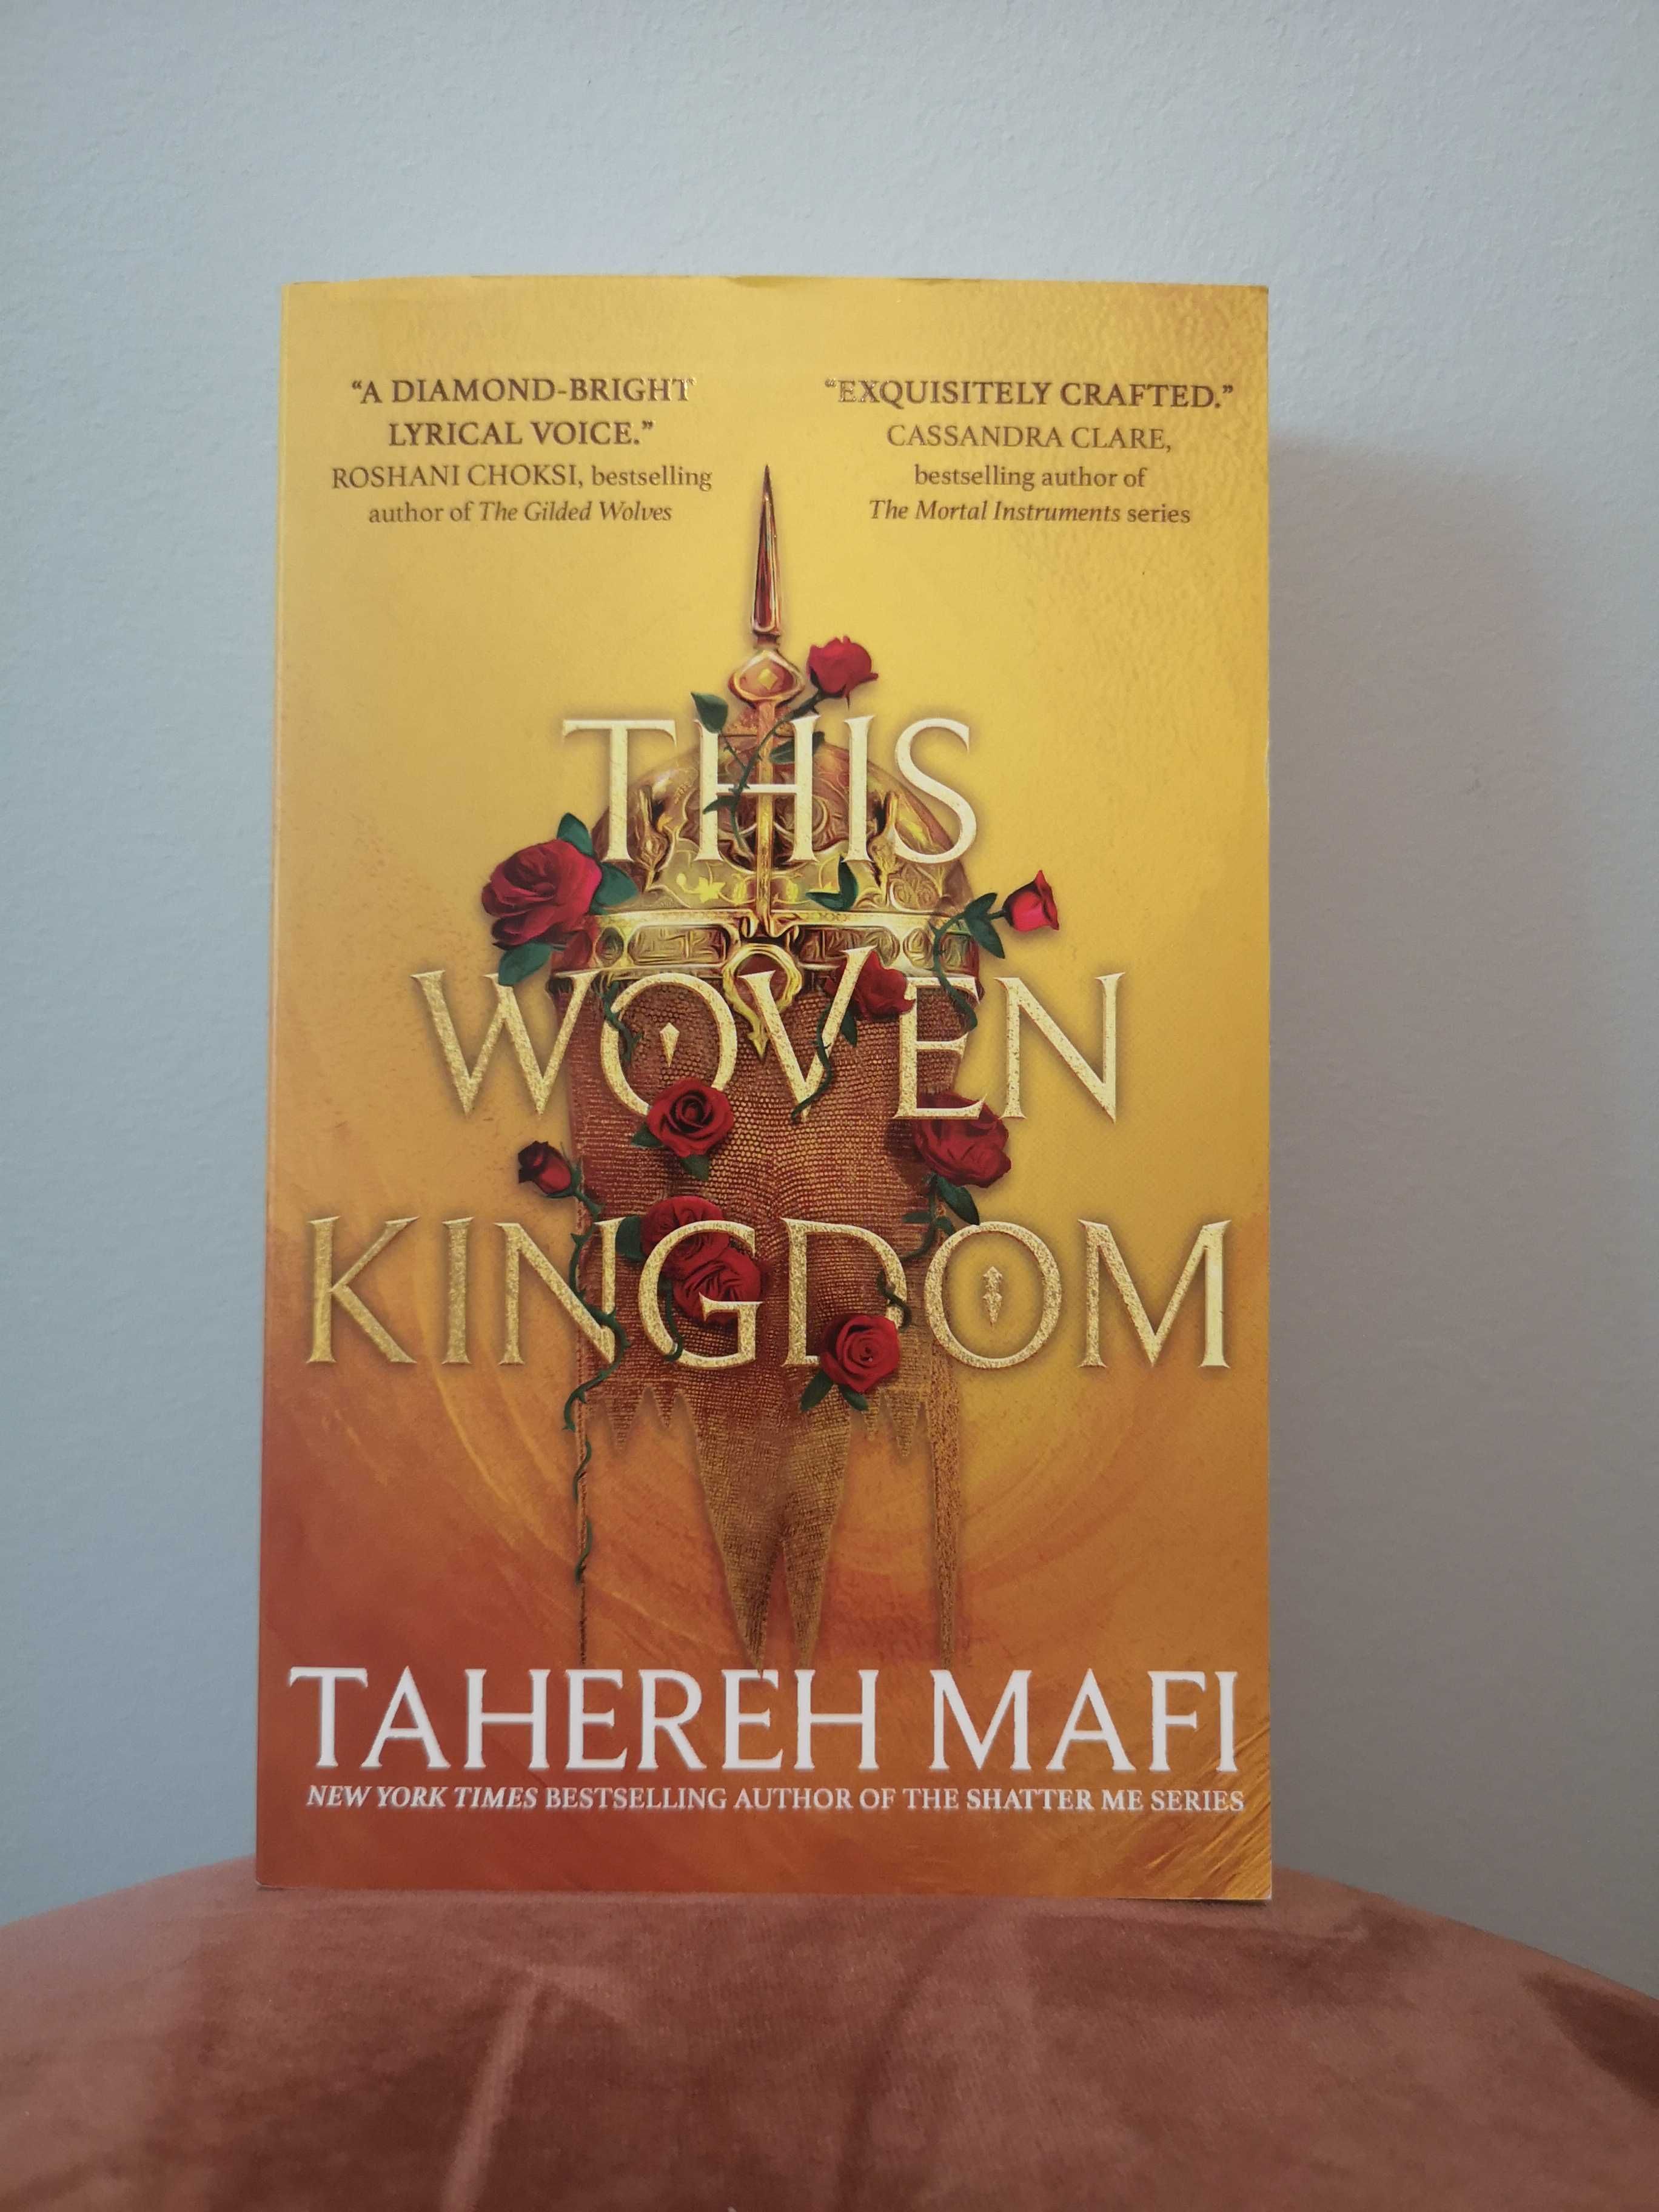 *NOVA REDUÇÃO* This Woven Kingdom - Tahereh Mafi 6.5€ PORTES INCLUÍDOS